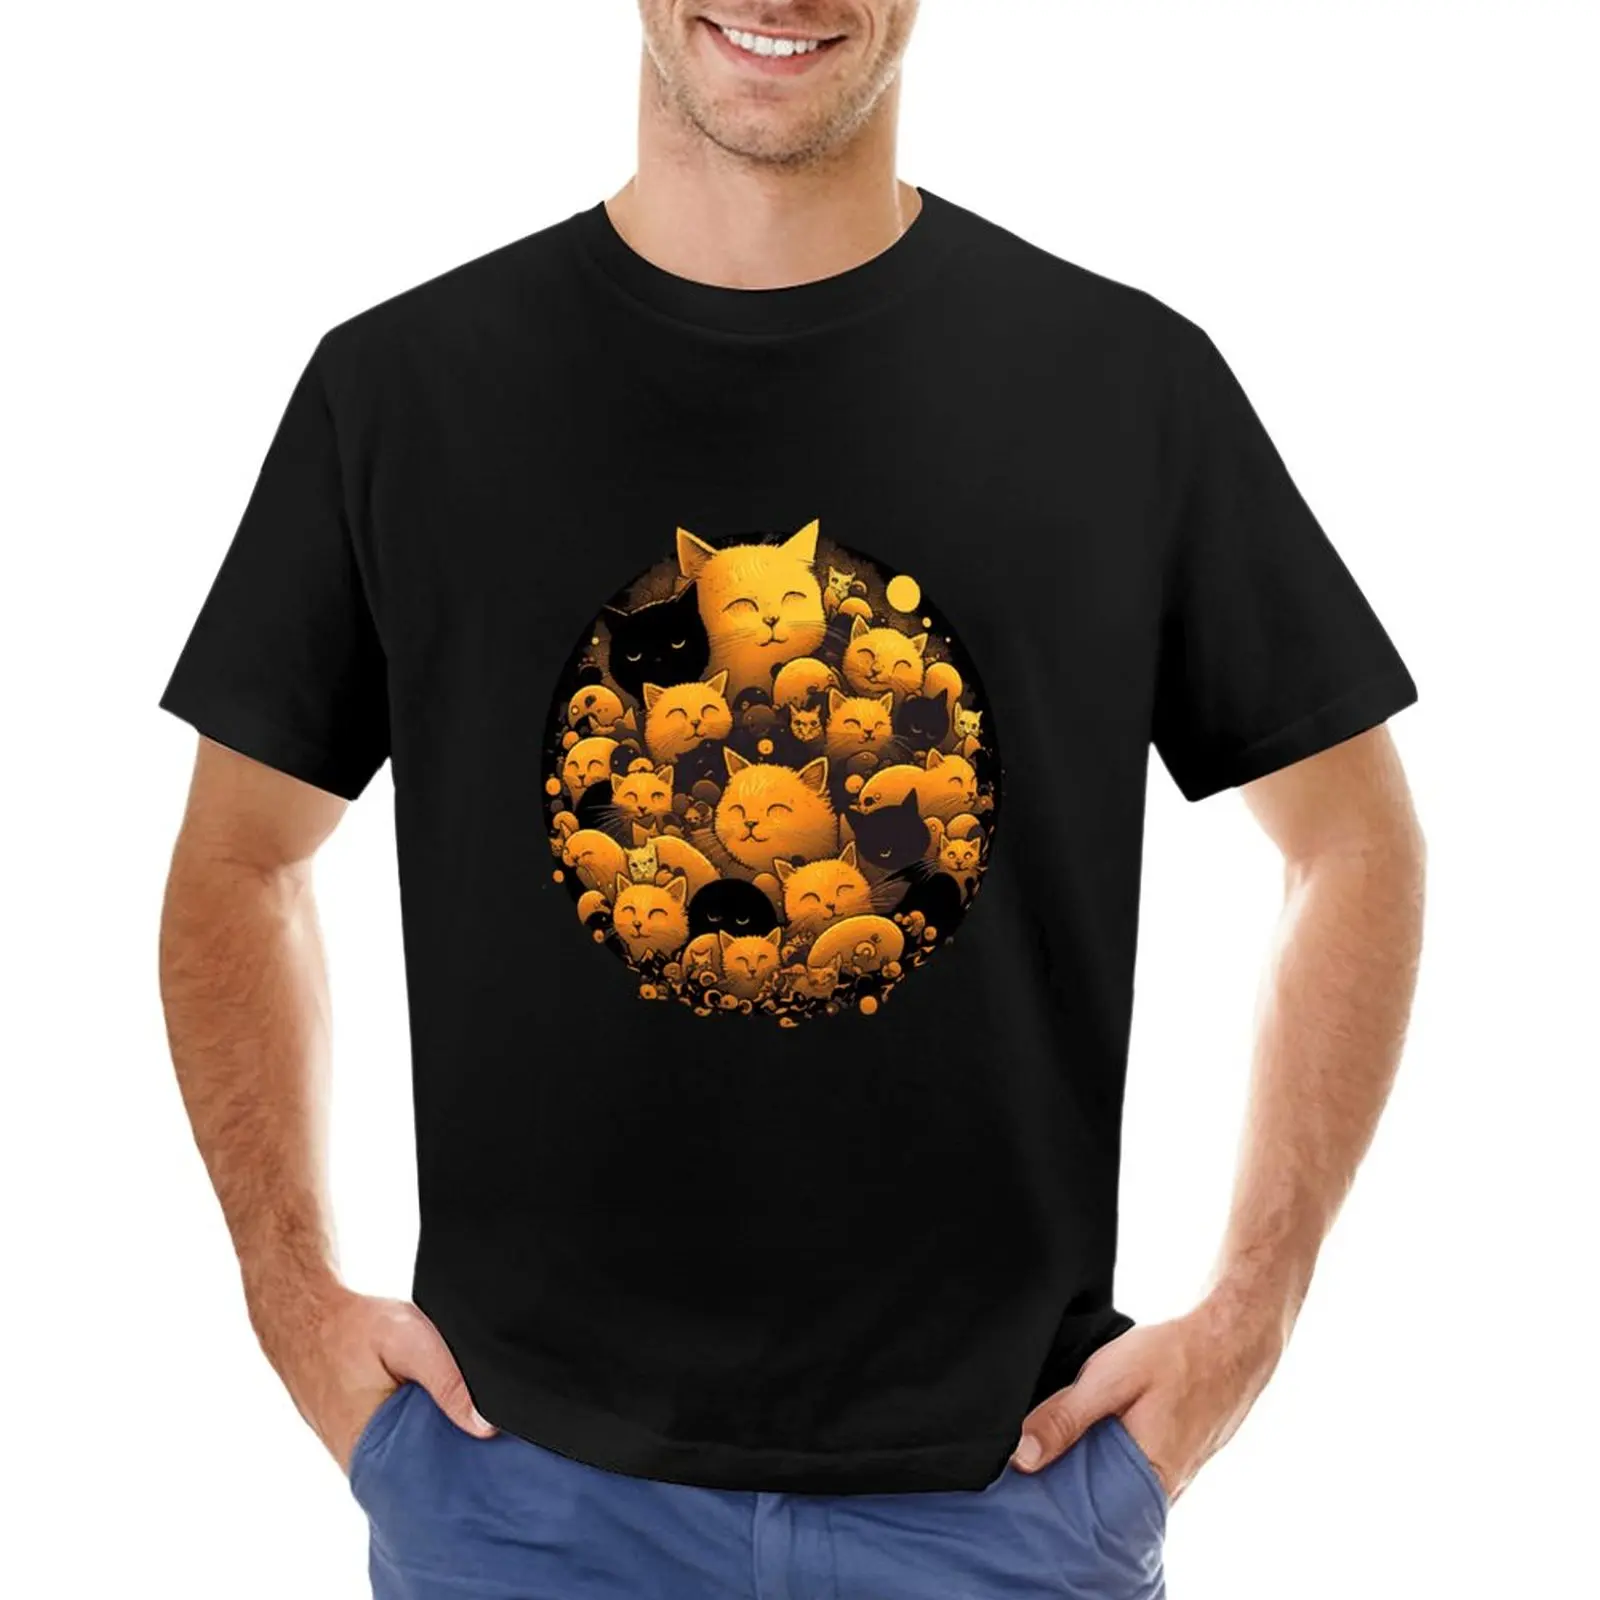 Cuddle Puddle - идеальный подарок для любителей кошек! Футболка # Y4, черная футболка, рубашка с животным принтом для мальчиков, мужская одежда Изображение 0